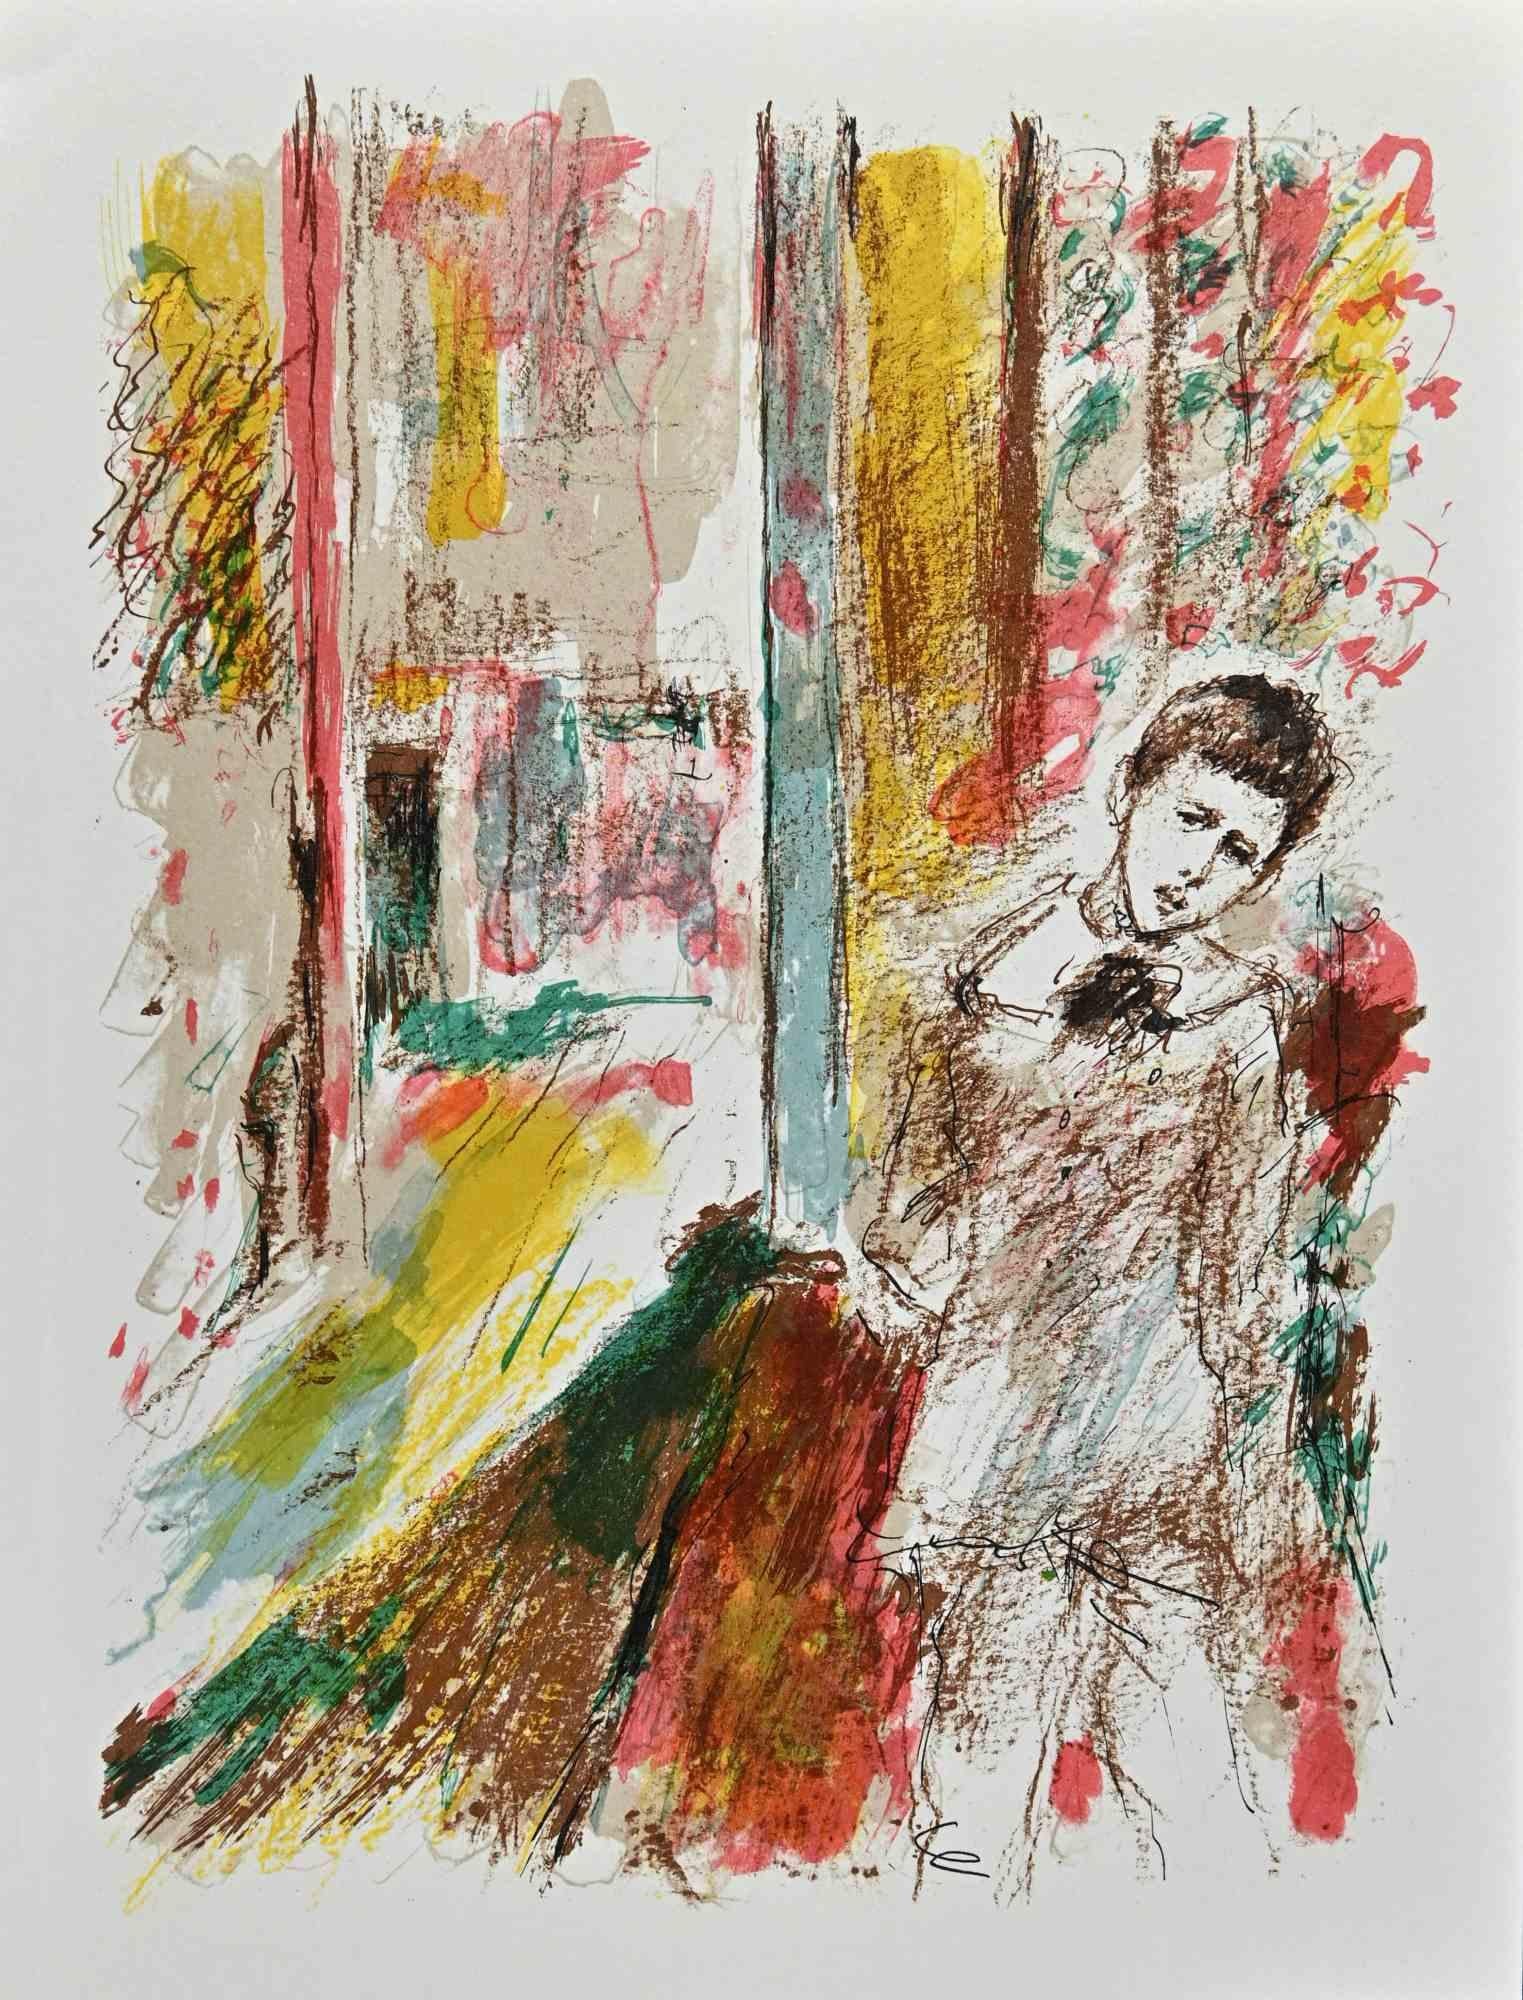 Der Junge ist eine Original-Lithographie von Jacques Pecnard aus der Mitte des 20. Jahrhunderts.

Gute Bedingungen.

Das Kunstwerk wird durch harmonische Farben in einer ausgewogenen Komposition dargestellt.